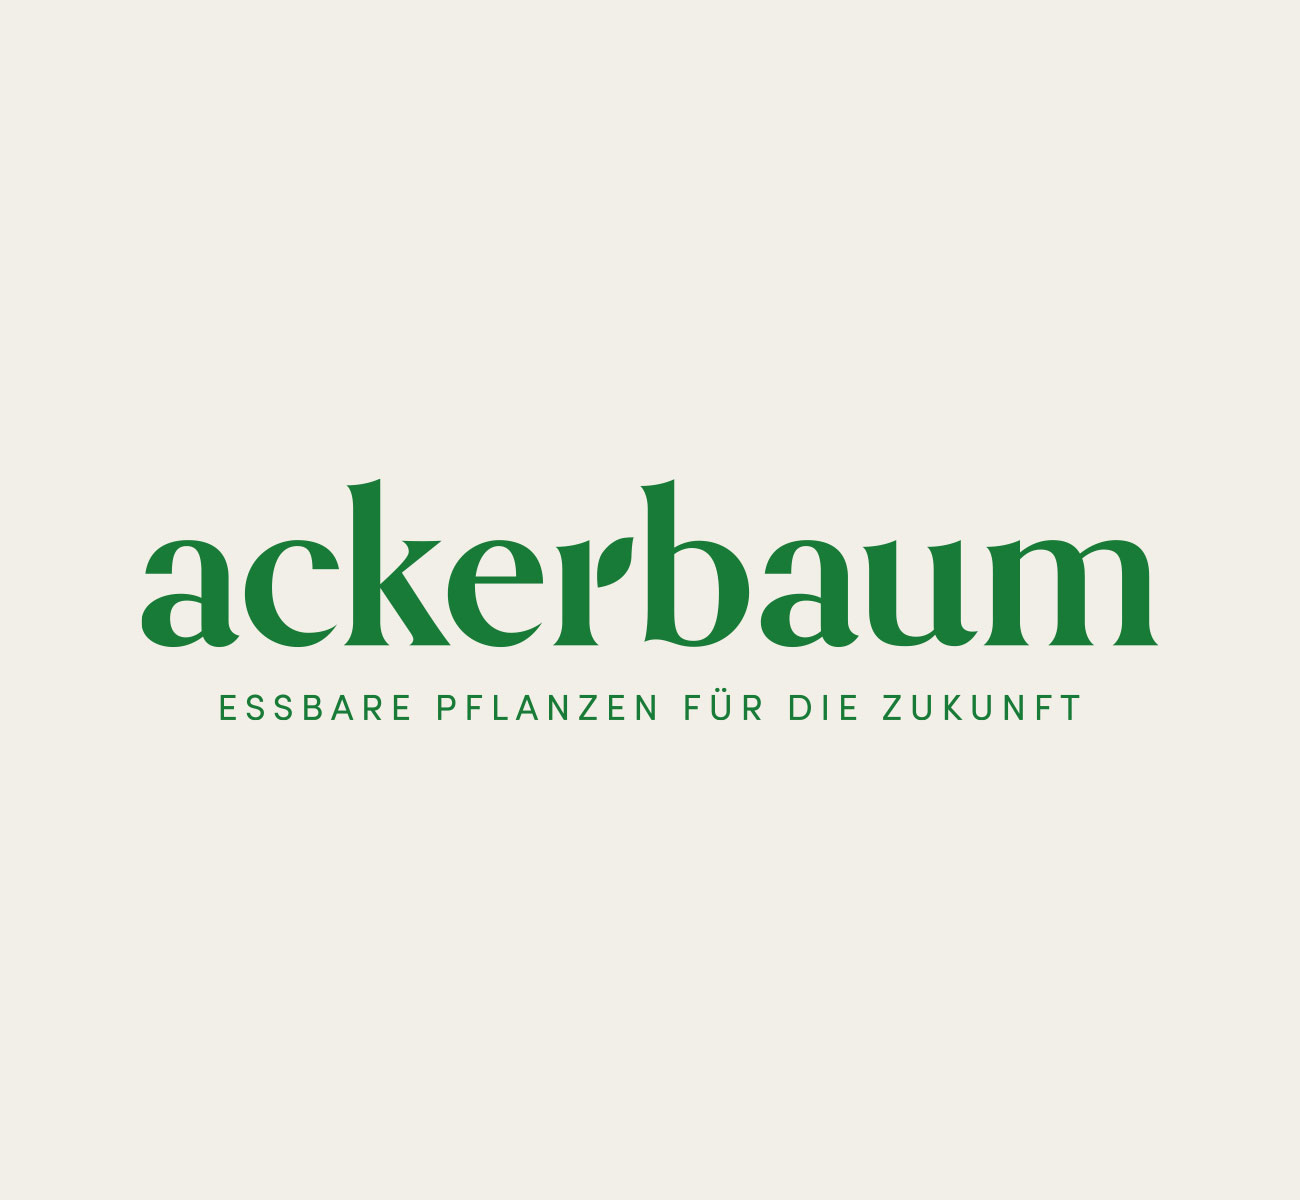 ackerbaum, corporate design